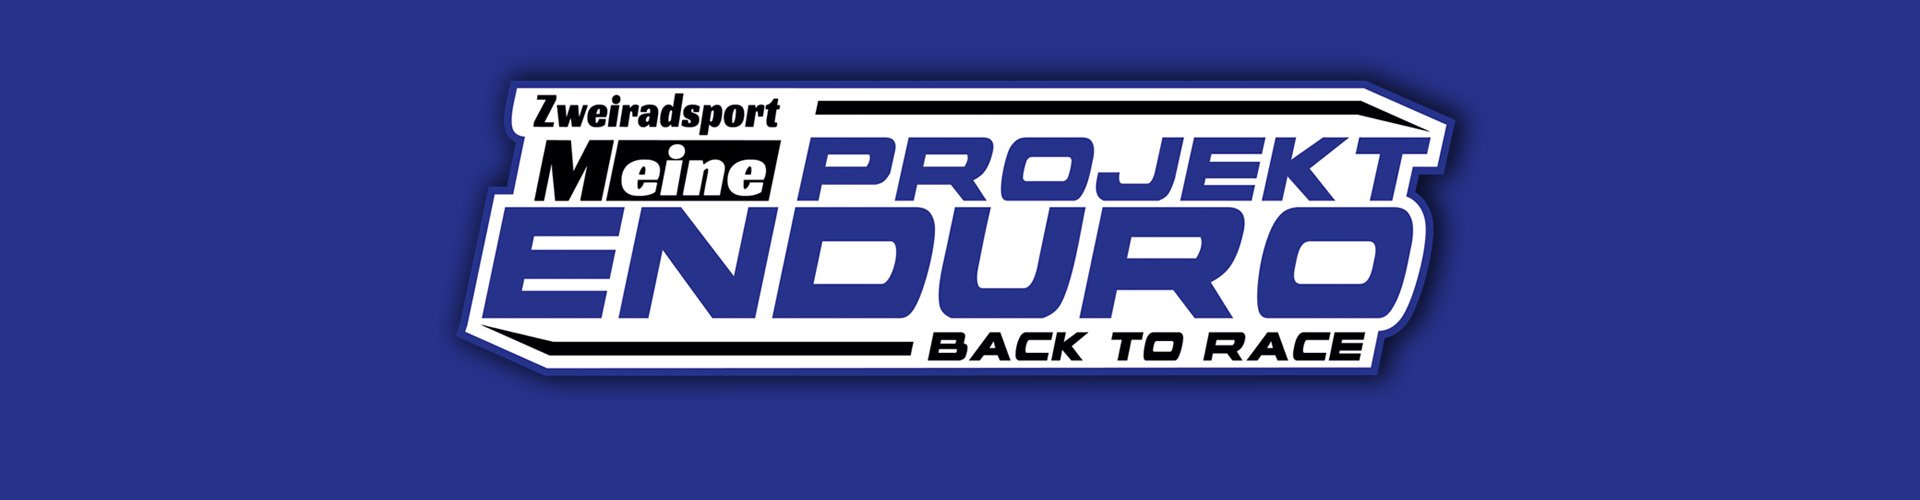 Logo Projekt Enduro Zweiradsport Meine back to race